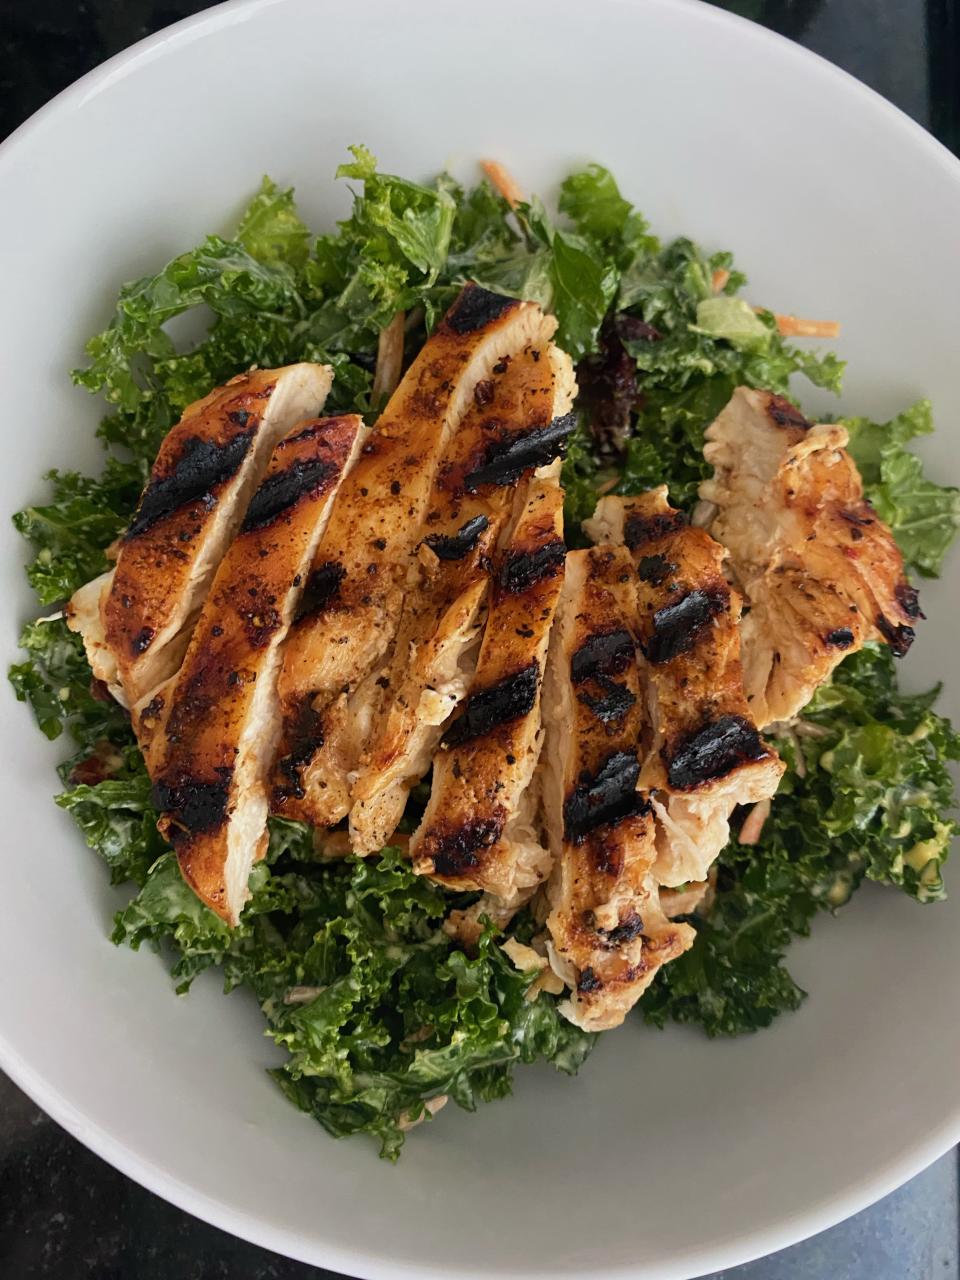  HelloFresh chicken and kale salad